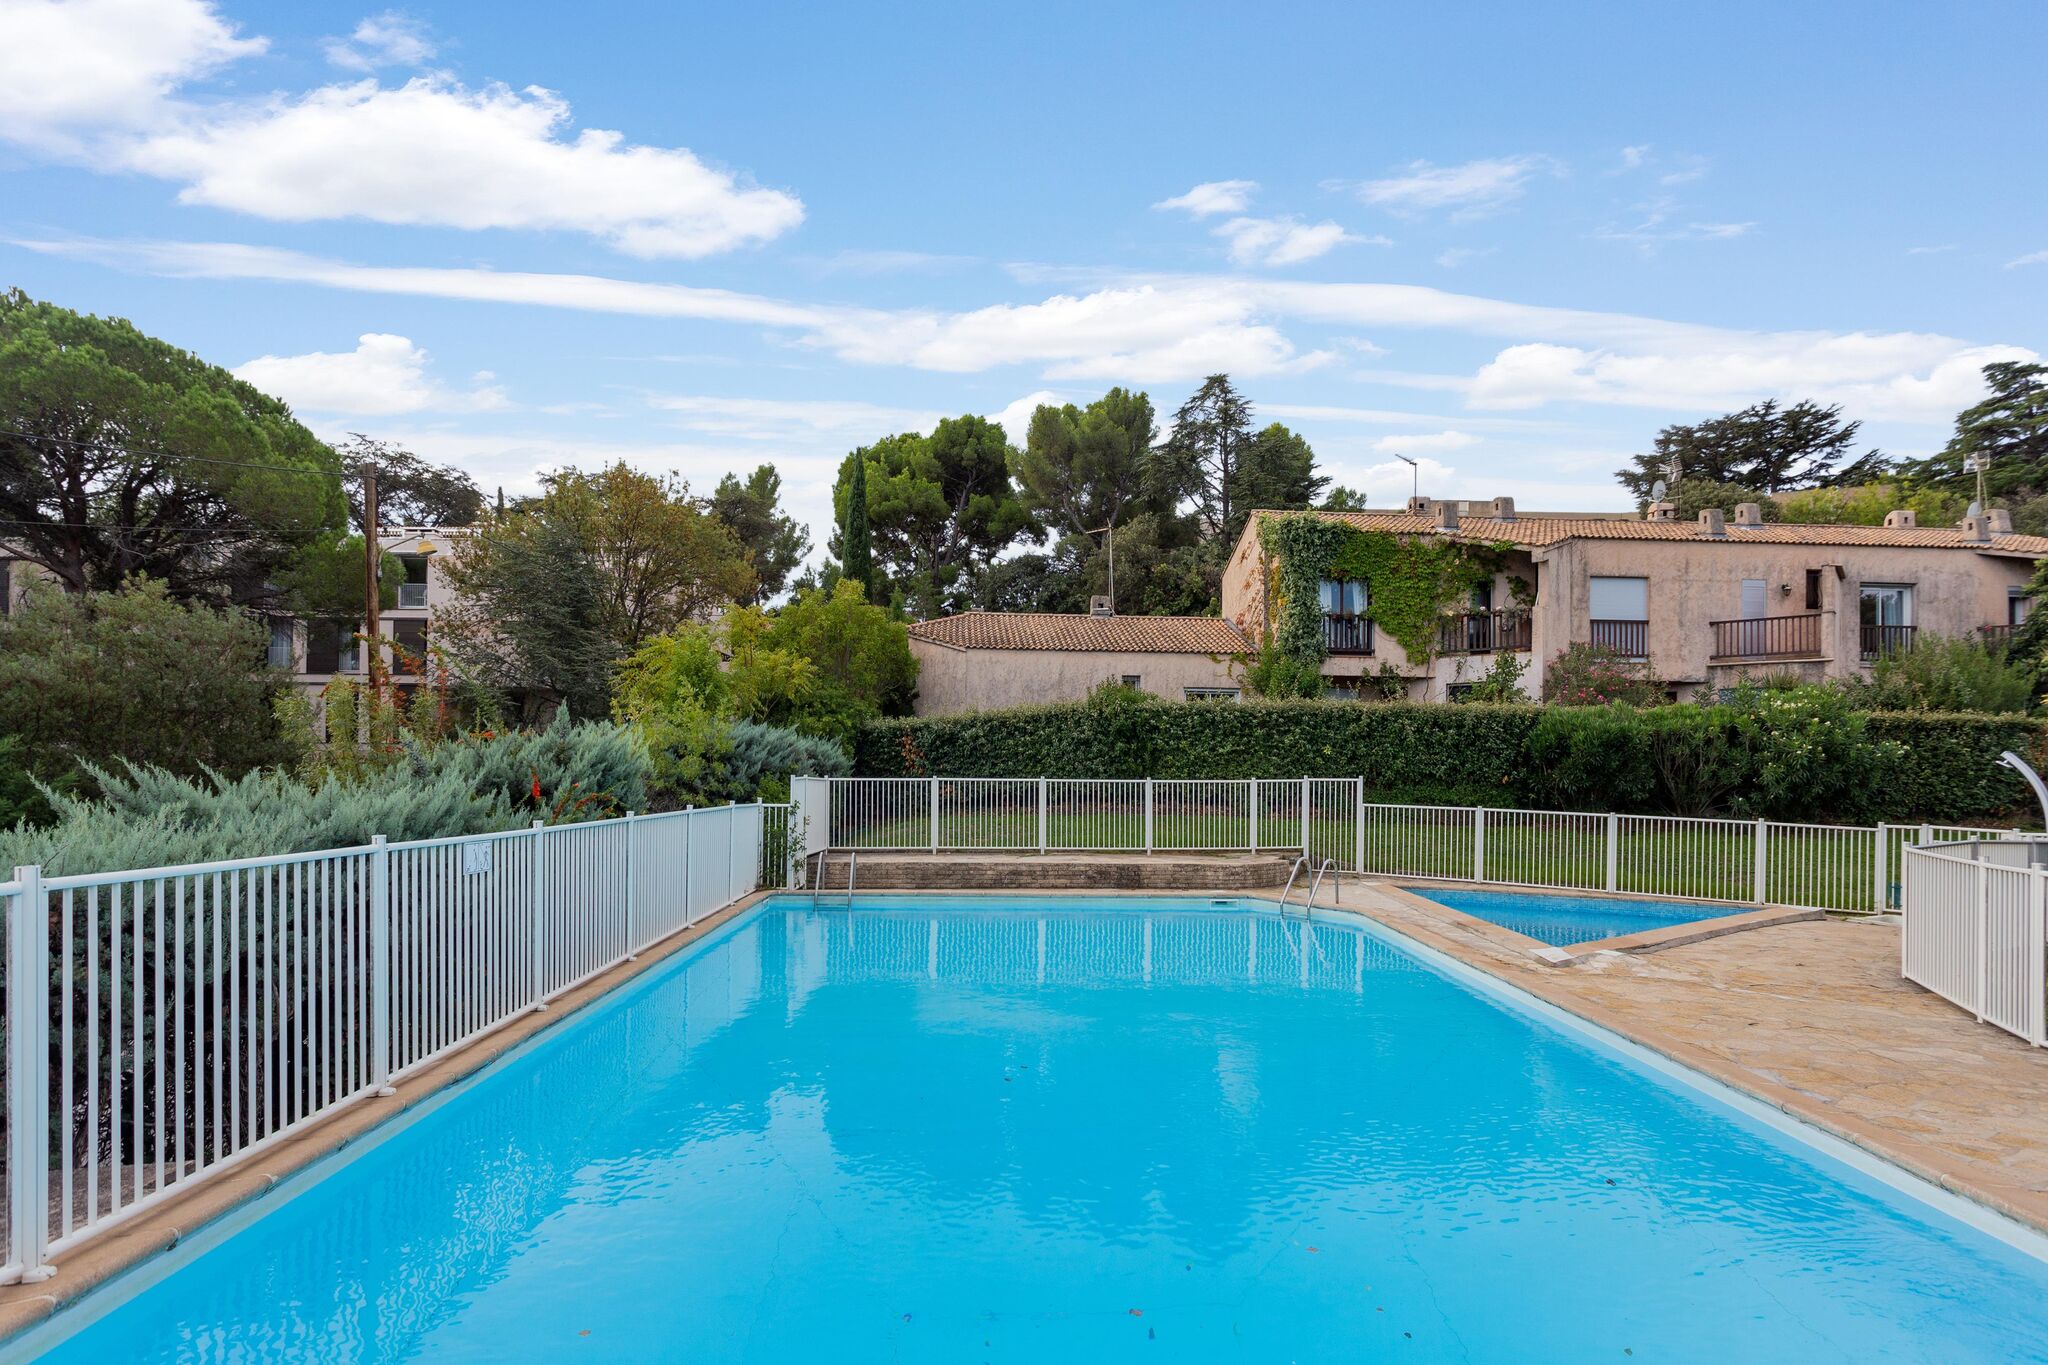 

Maison de vacances élégante avec piscine, jardin, court de tennis